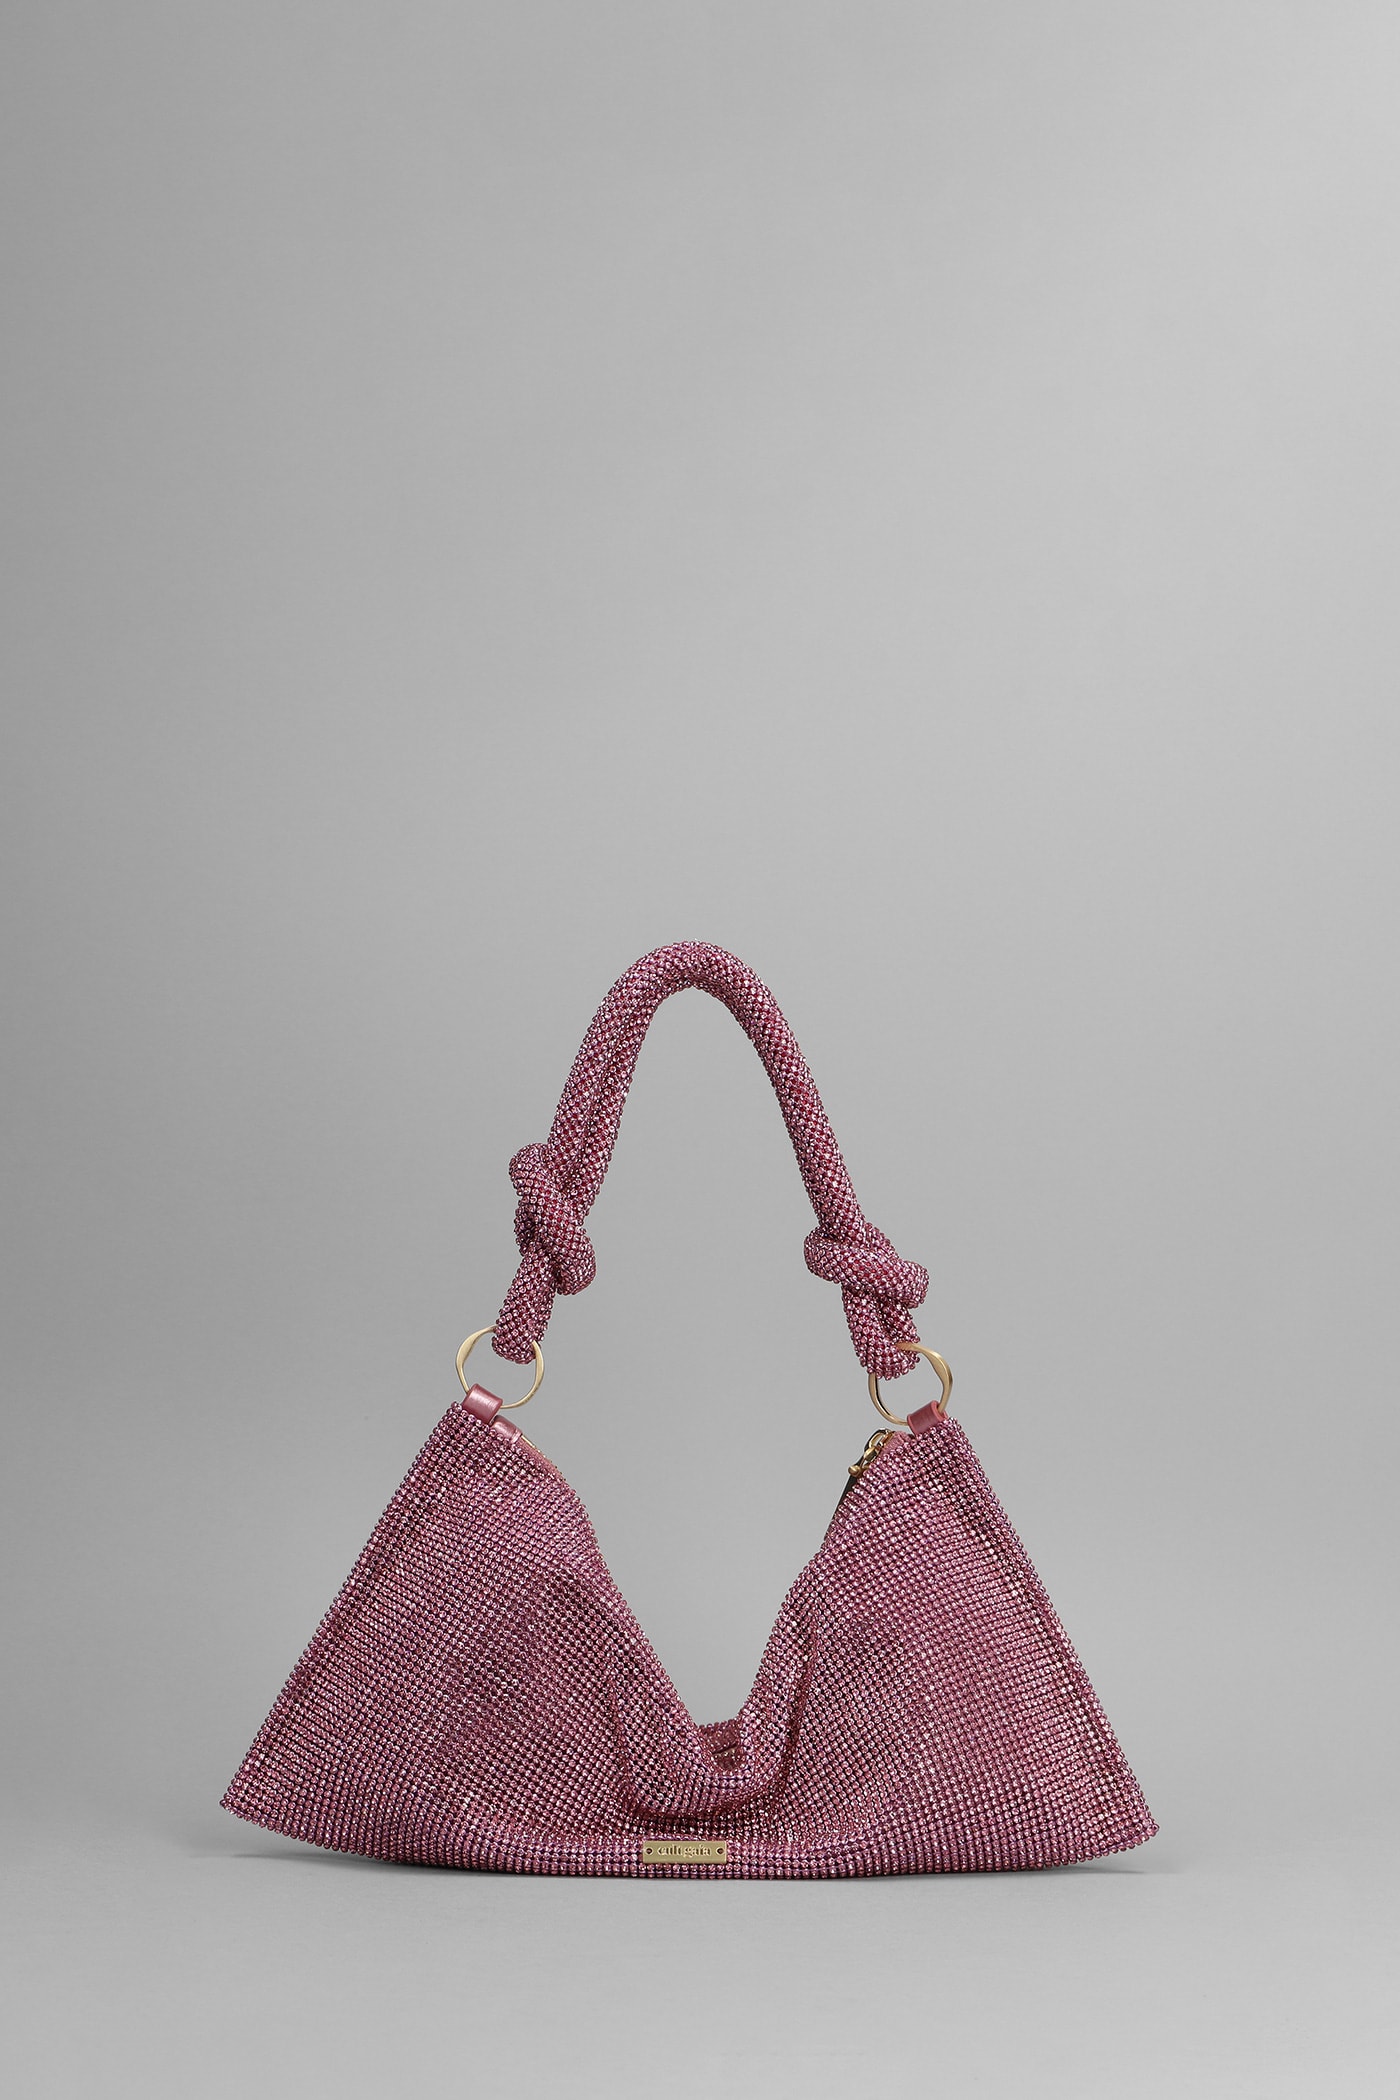 Cult Gaia Hera Nano Shoulder Hand Bag In Rose-pink Metal Alloy